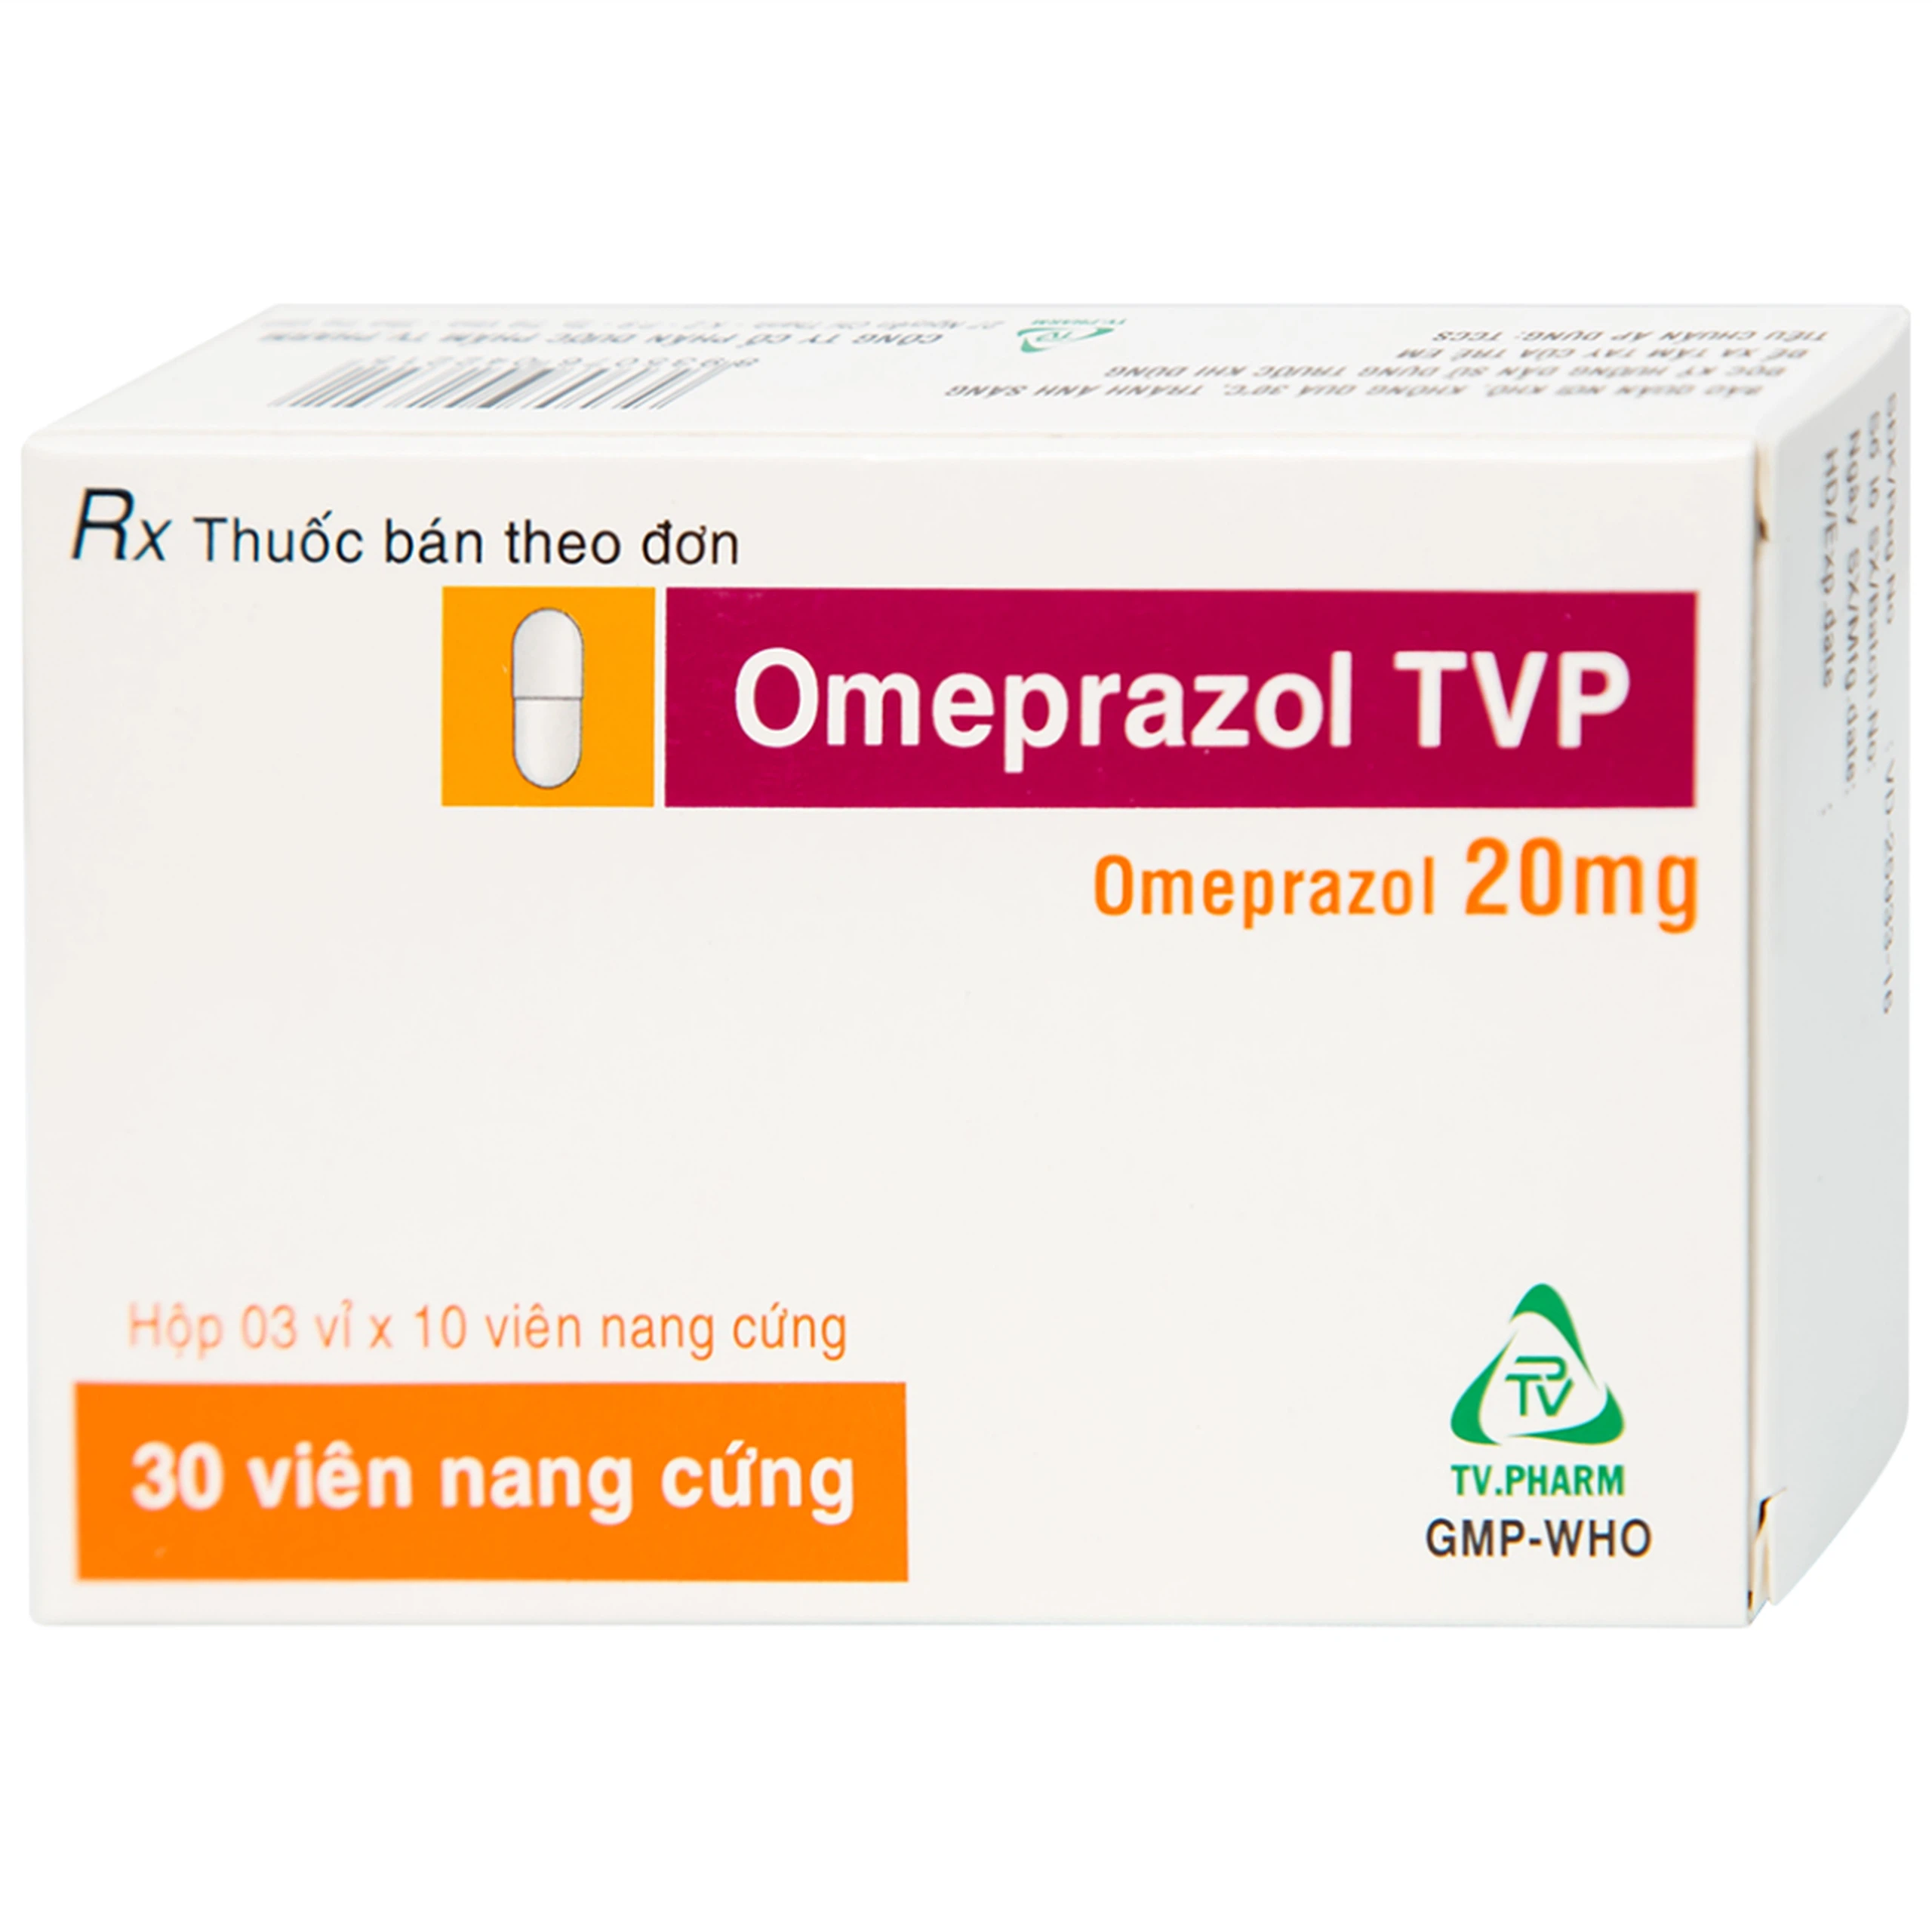 Viên nang cứng Omeprazol TVP 20mg điều trị loét tá tràng, viêm loét dạ dày (3 vỉ x 10 viên) 